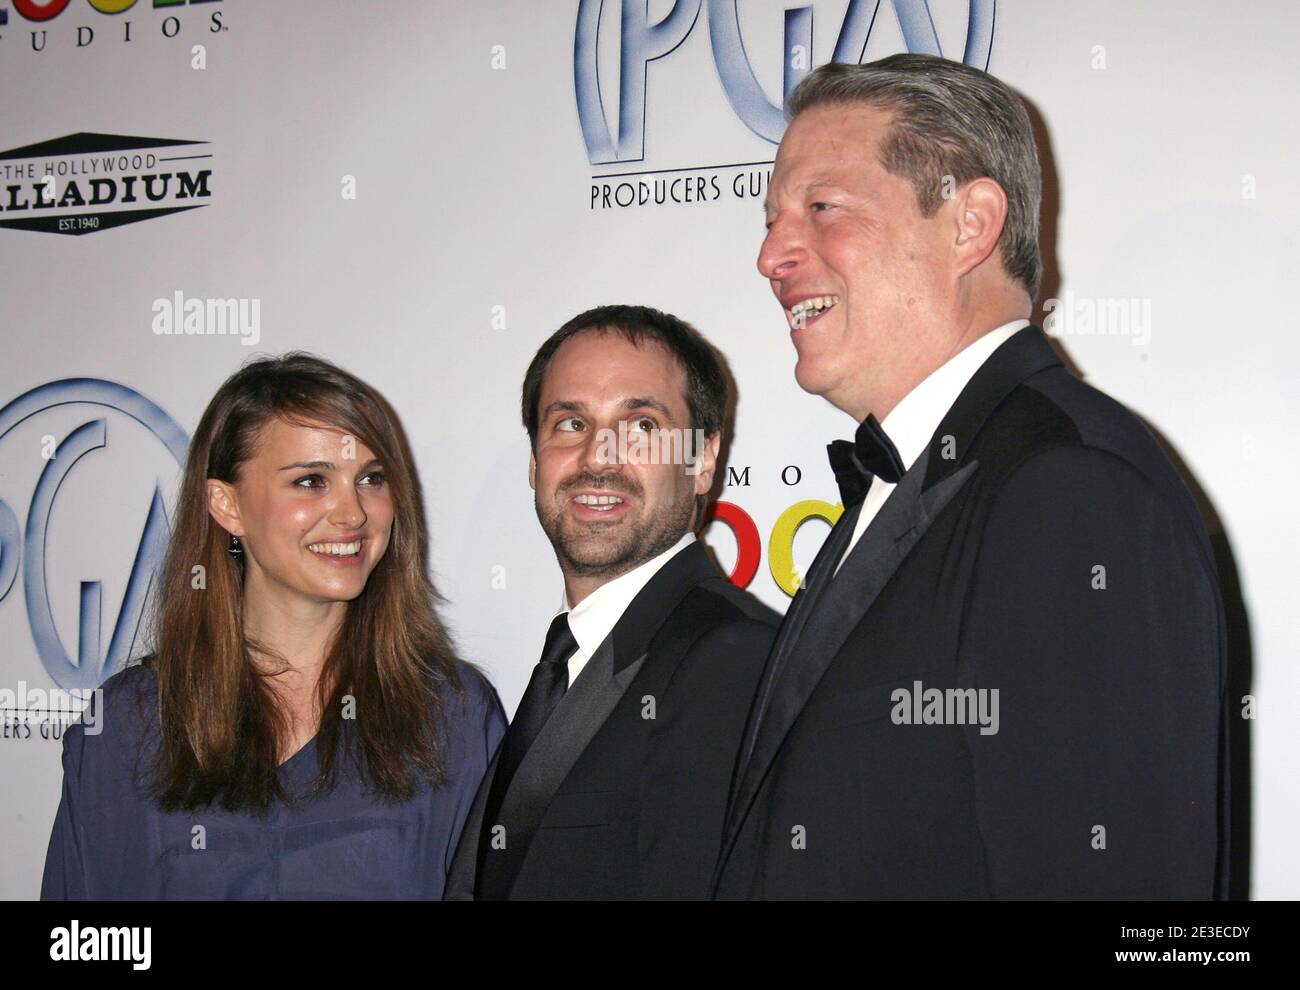 Natalie Portman, al Gore, arriva al 20° premio annuale della Gilda dei produttori all'Hollywood Palladium di Los Angeles, California, USA, il 24 gennaio 2009. Foto di Baxter/ABACAPRESS.COM Foto Stock